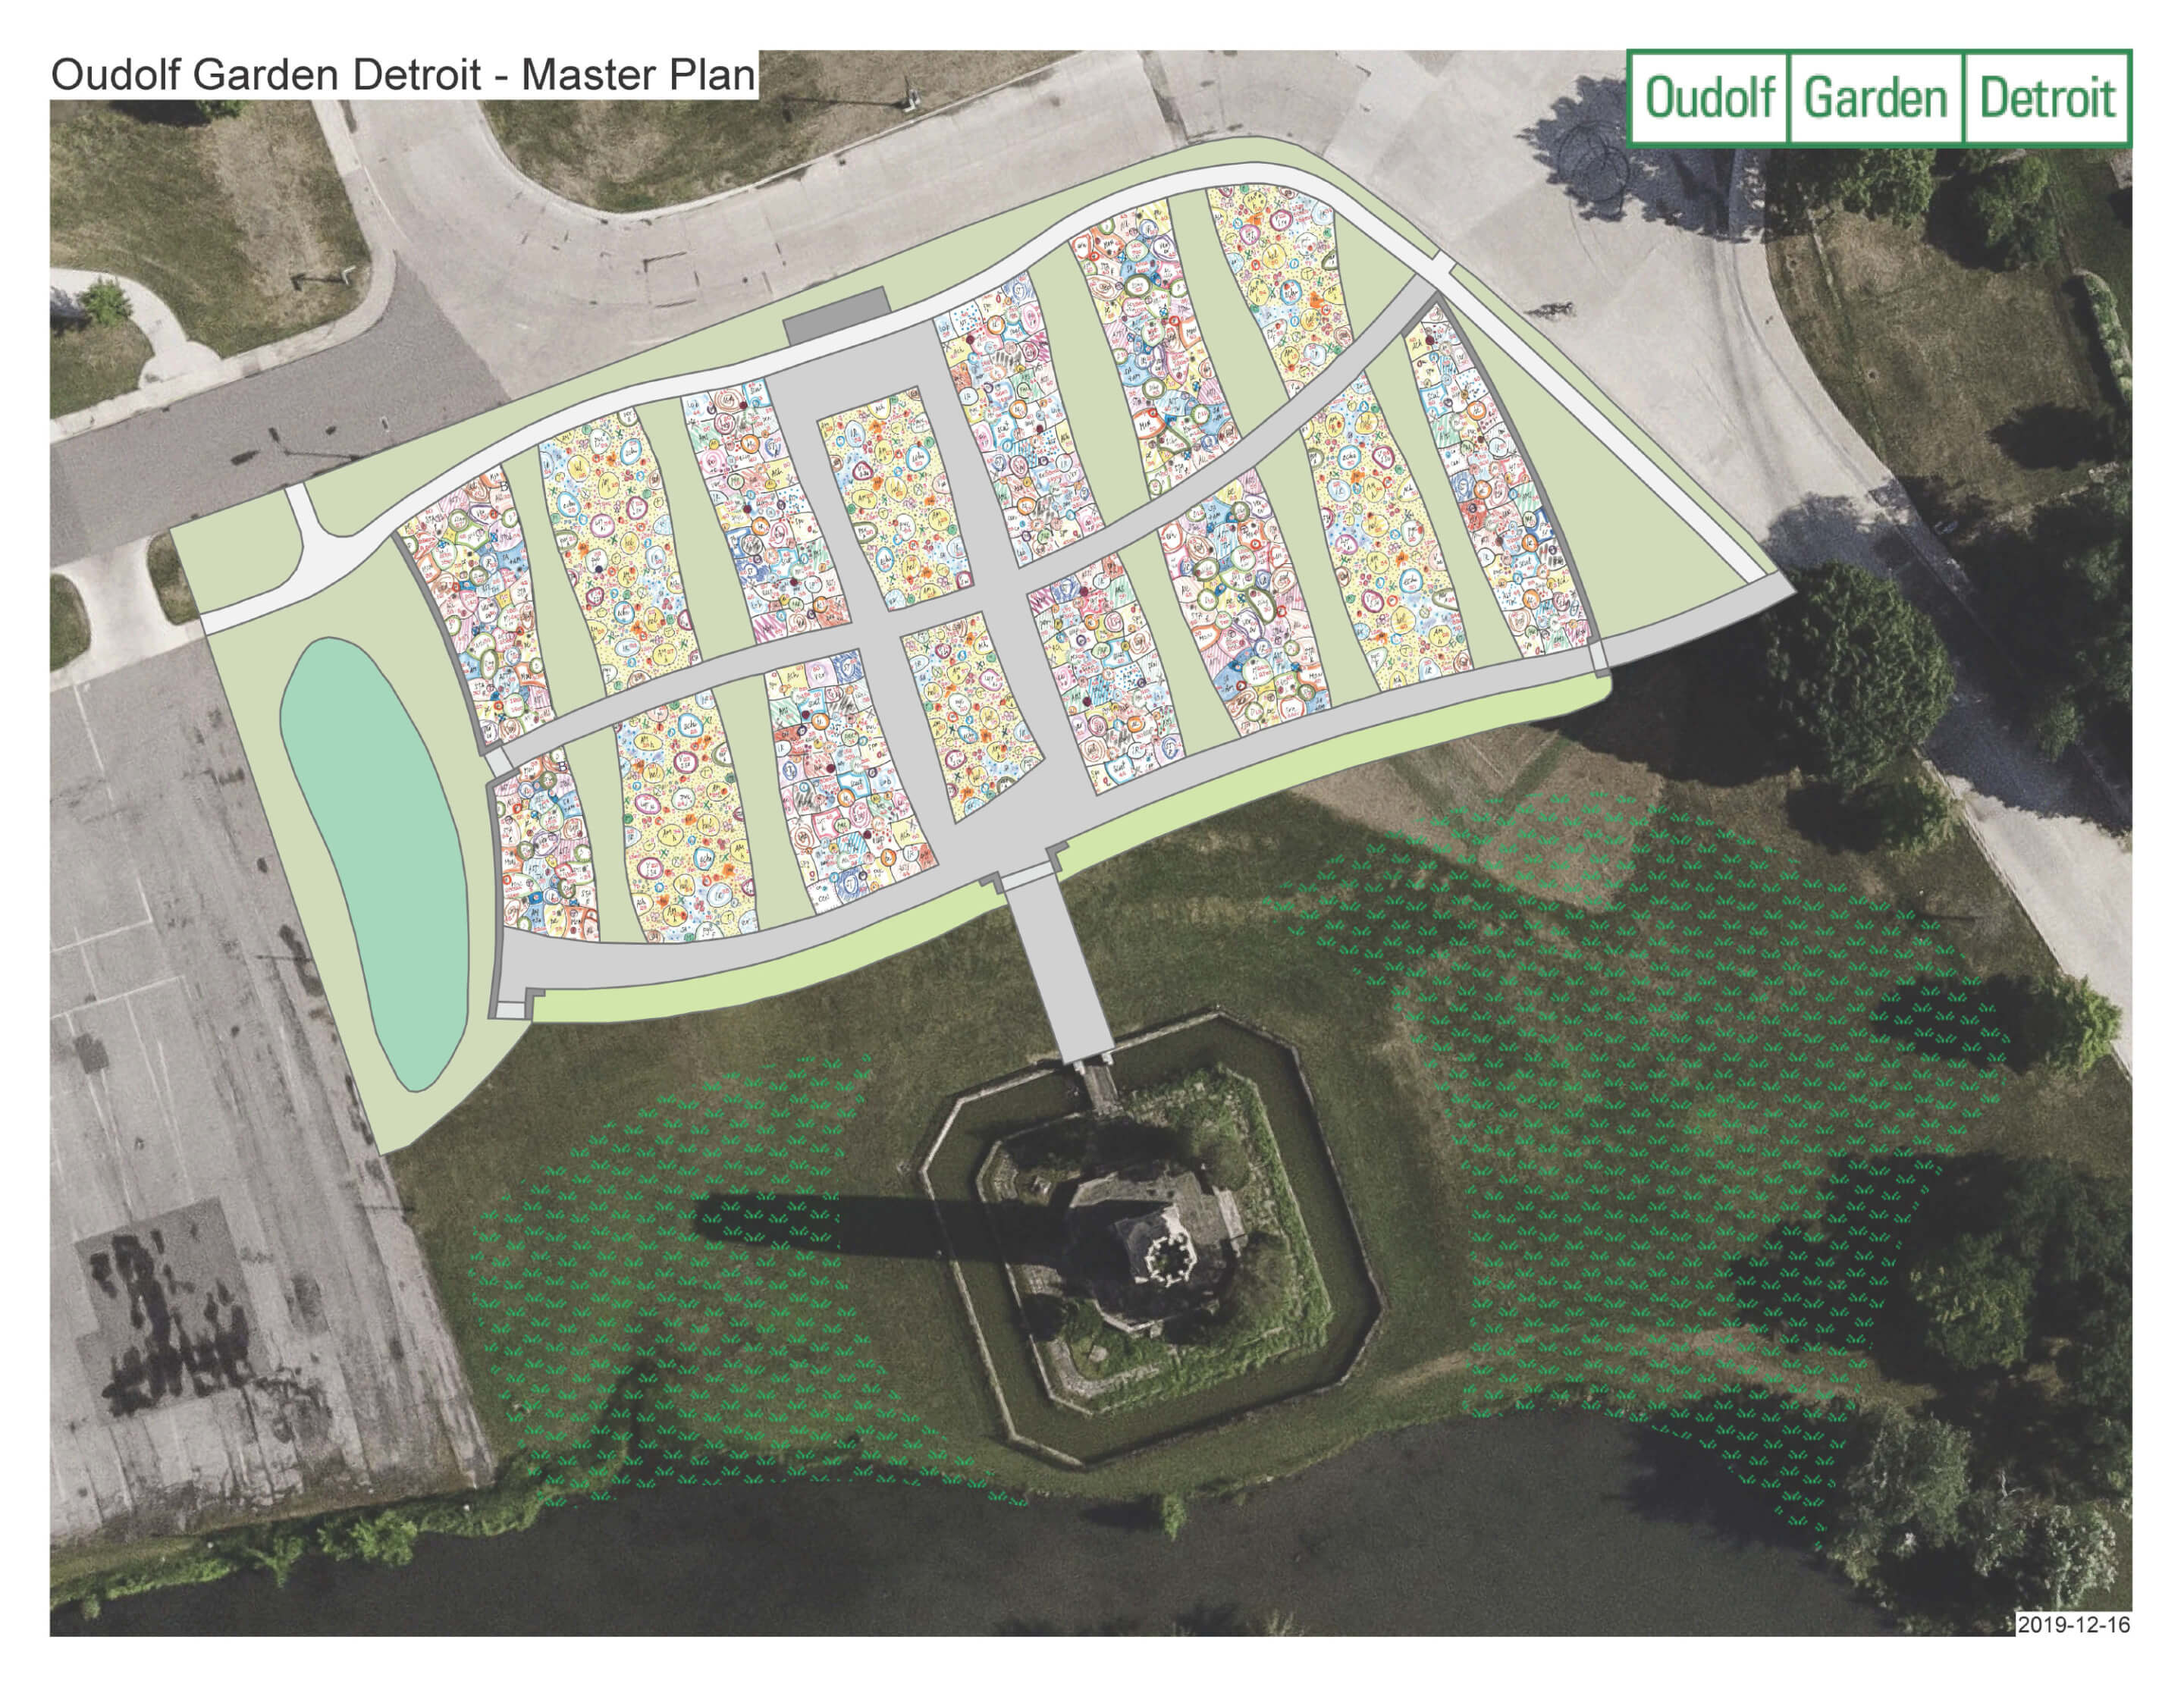 An aerial site plan of a large rectangular garden